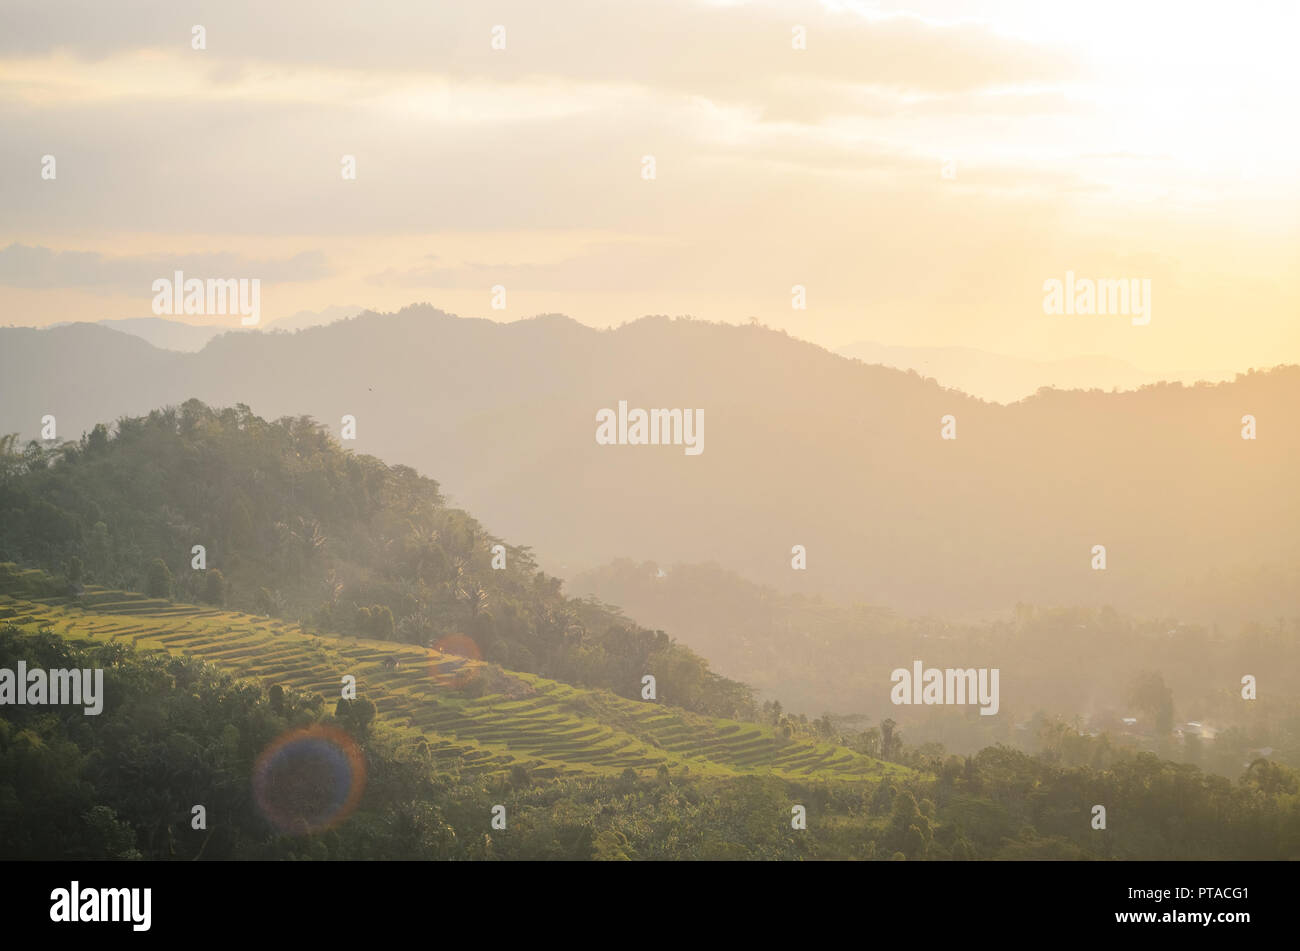 Sonnenuntergang über dem terrassenförmig angelegten ricefield mit Berg im Hintergrund in Ranggu, West Manggarai, Flores Island, Nusa Tenggara Timur, Indonesien Stockfoto